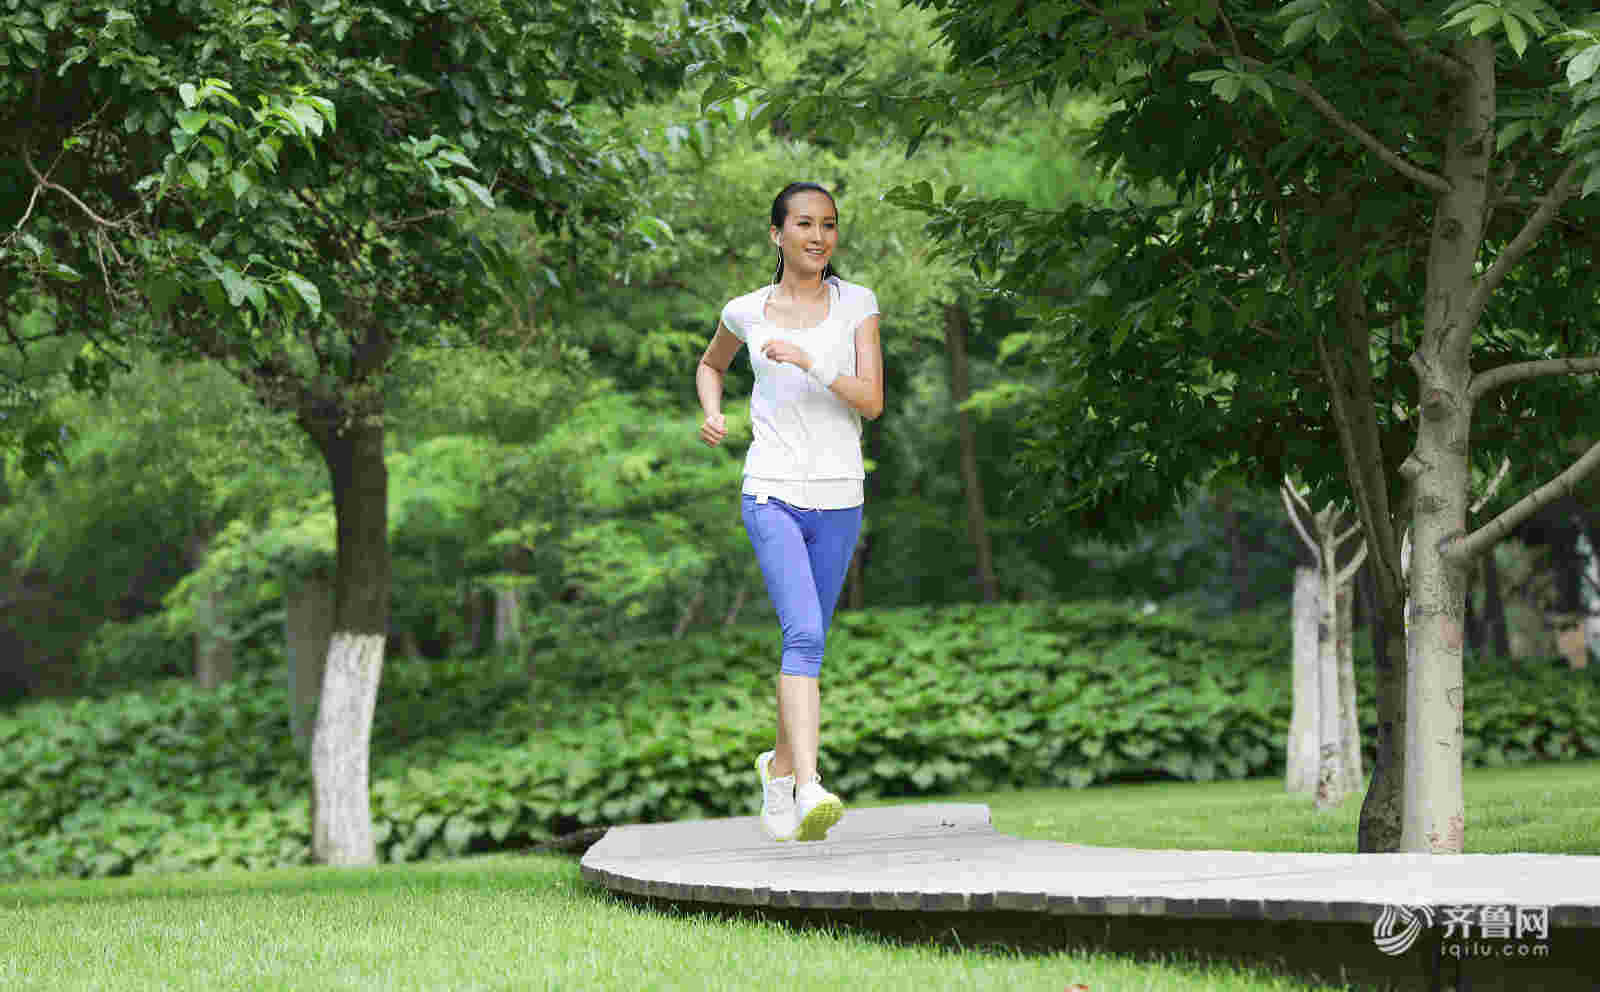 【健身课堂】运动医学专家韩文义教您健康跑步